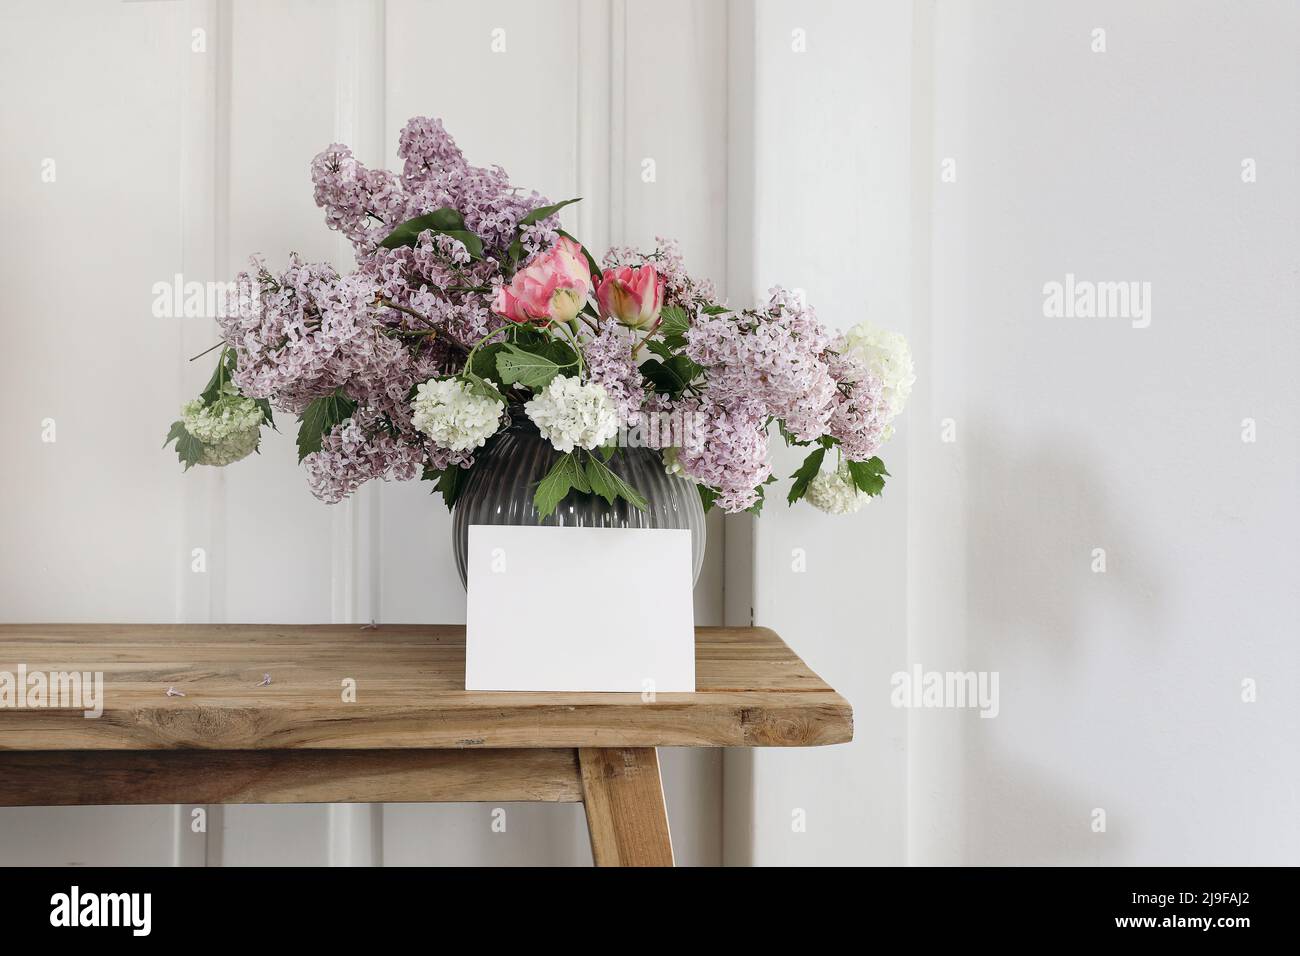 La vie au printemps. Carte de vœux horizontale vierge, invitation. Vase avec bouquet de lilas, viburnum et tulipes sur une ancienne table en bois. Bois blanc Banque D'Images